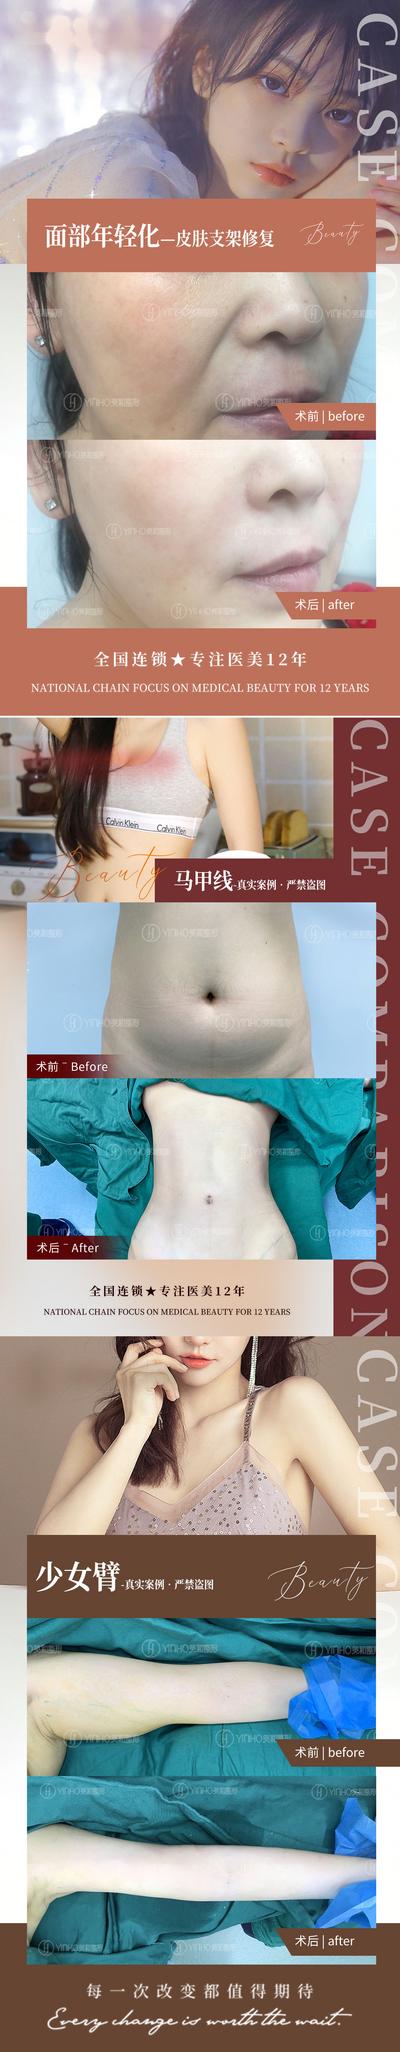 【南门网】海报 医美 案例 腰腹环吸 手臂 腰腹 对比 系列